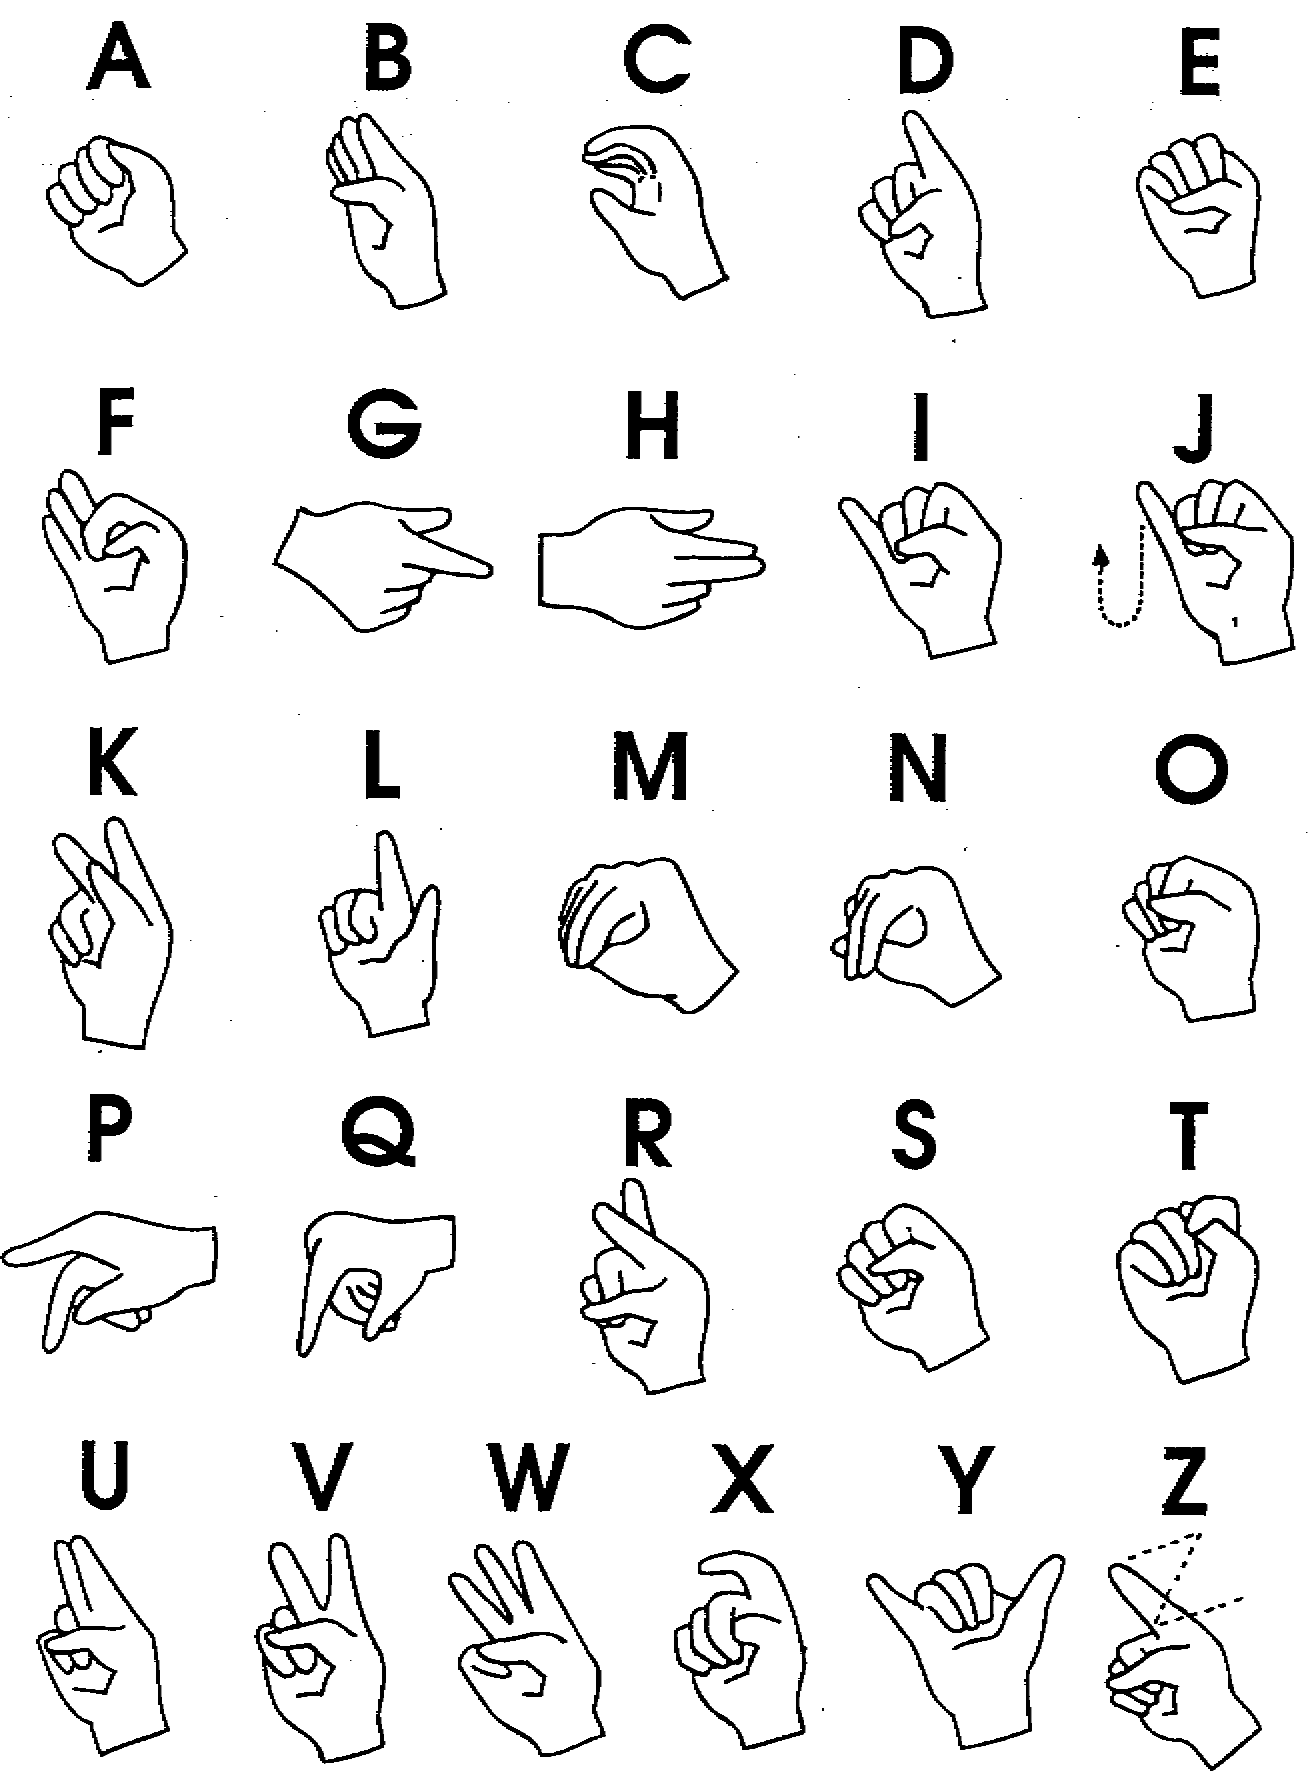 ASL Wallpaper. ASL Wallpaper, ASL Social Background and ASL Background